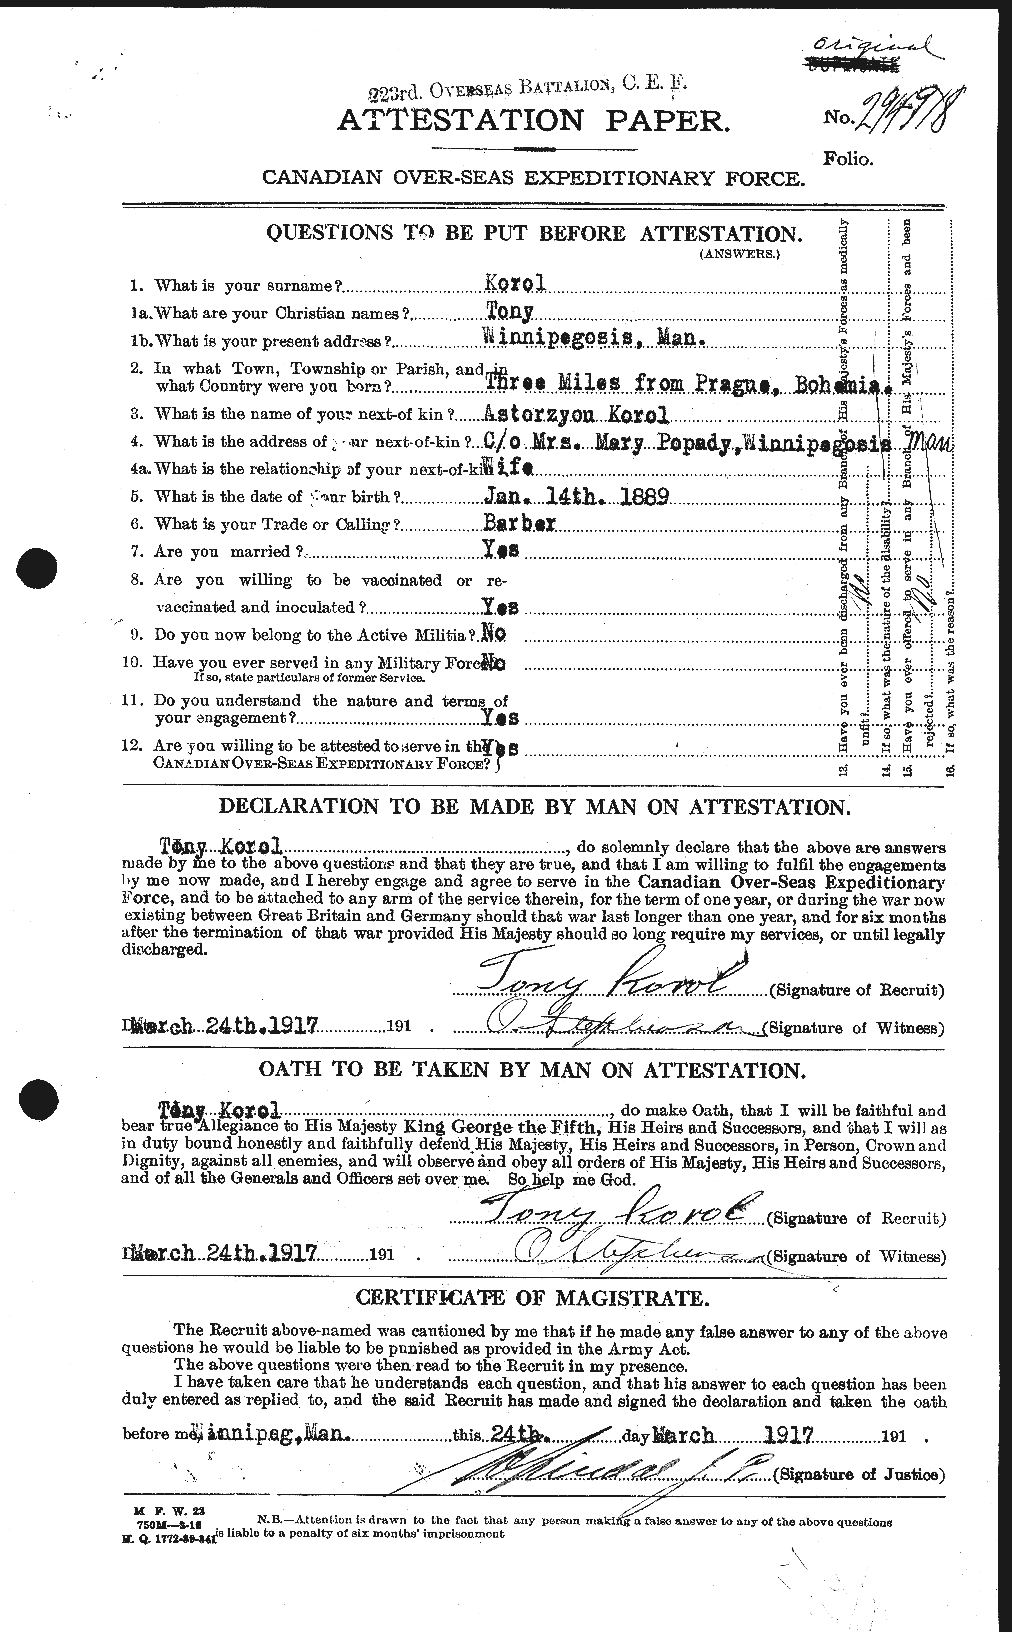 Dossiers du Personnel de la Première Guerre mondiale - CEC 443795a